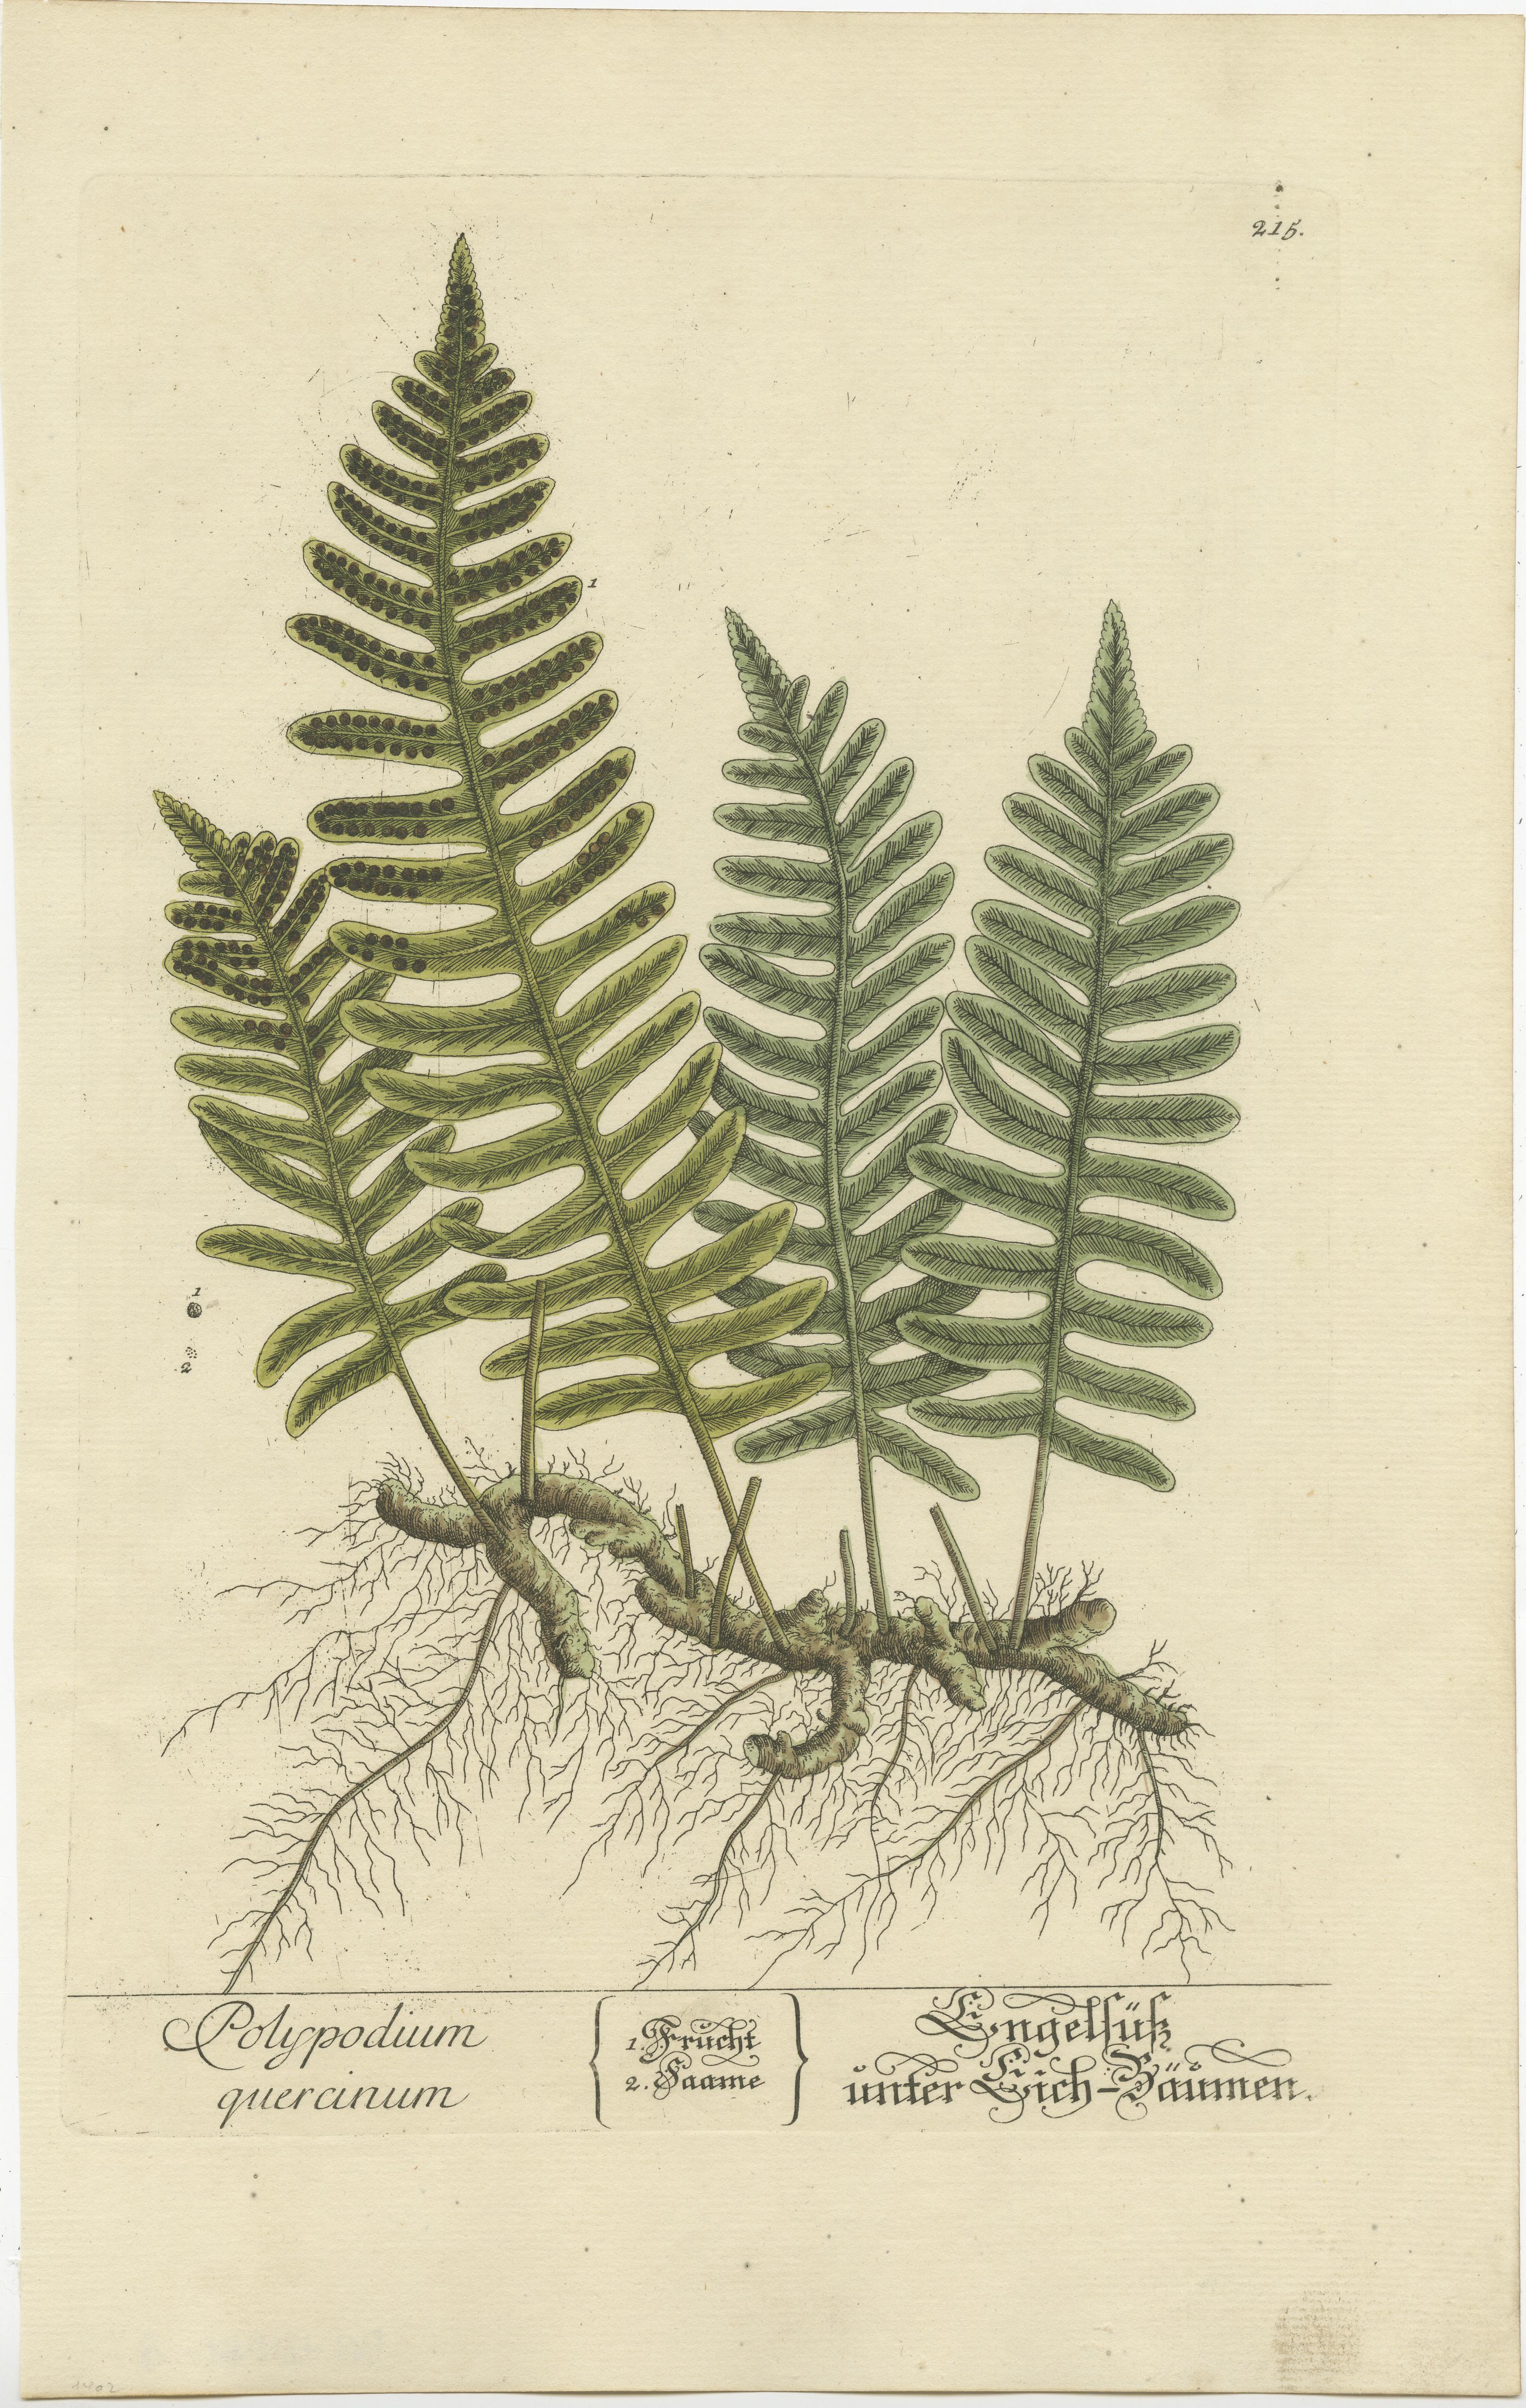 Gravure ancienne intitulée 'Polypodium Quercinum'. Impression botanique du polypode commun, une fougère à feuilles persistantes. Publié par ou après Elisabeth Blackwell, vers 1750. 